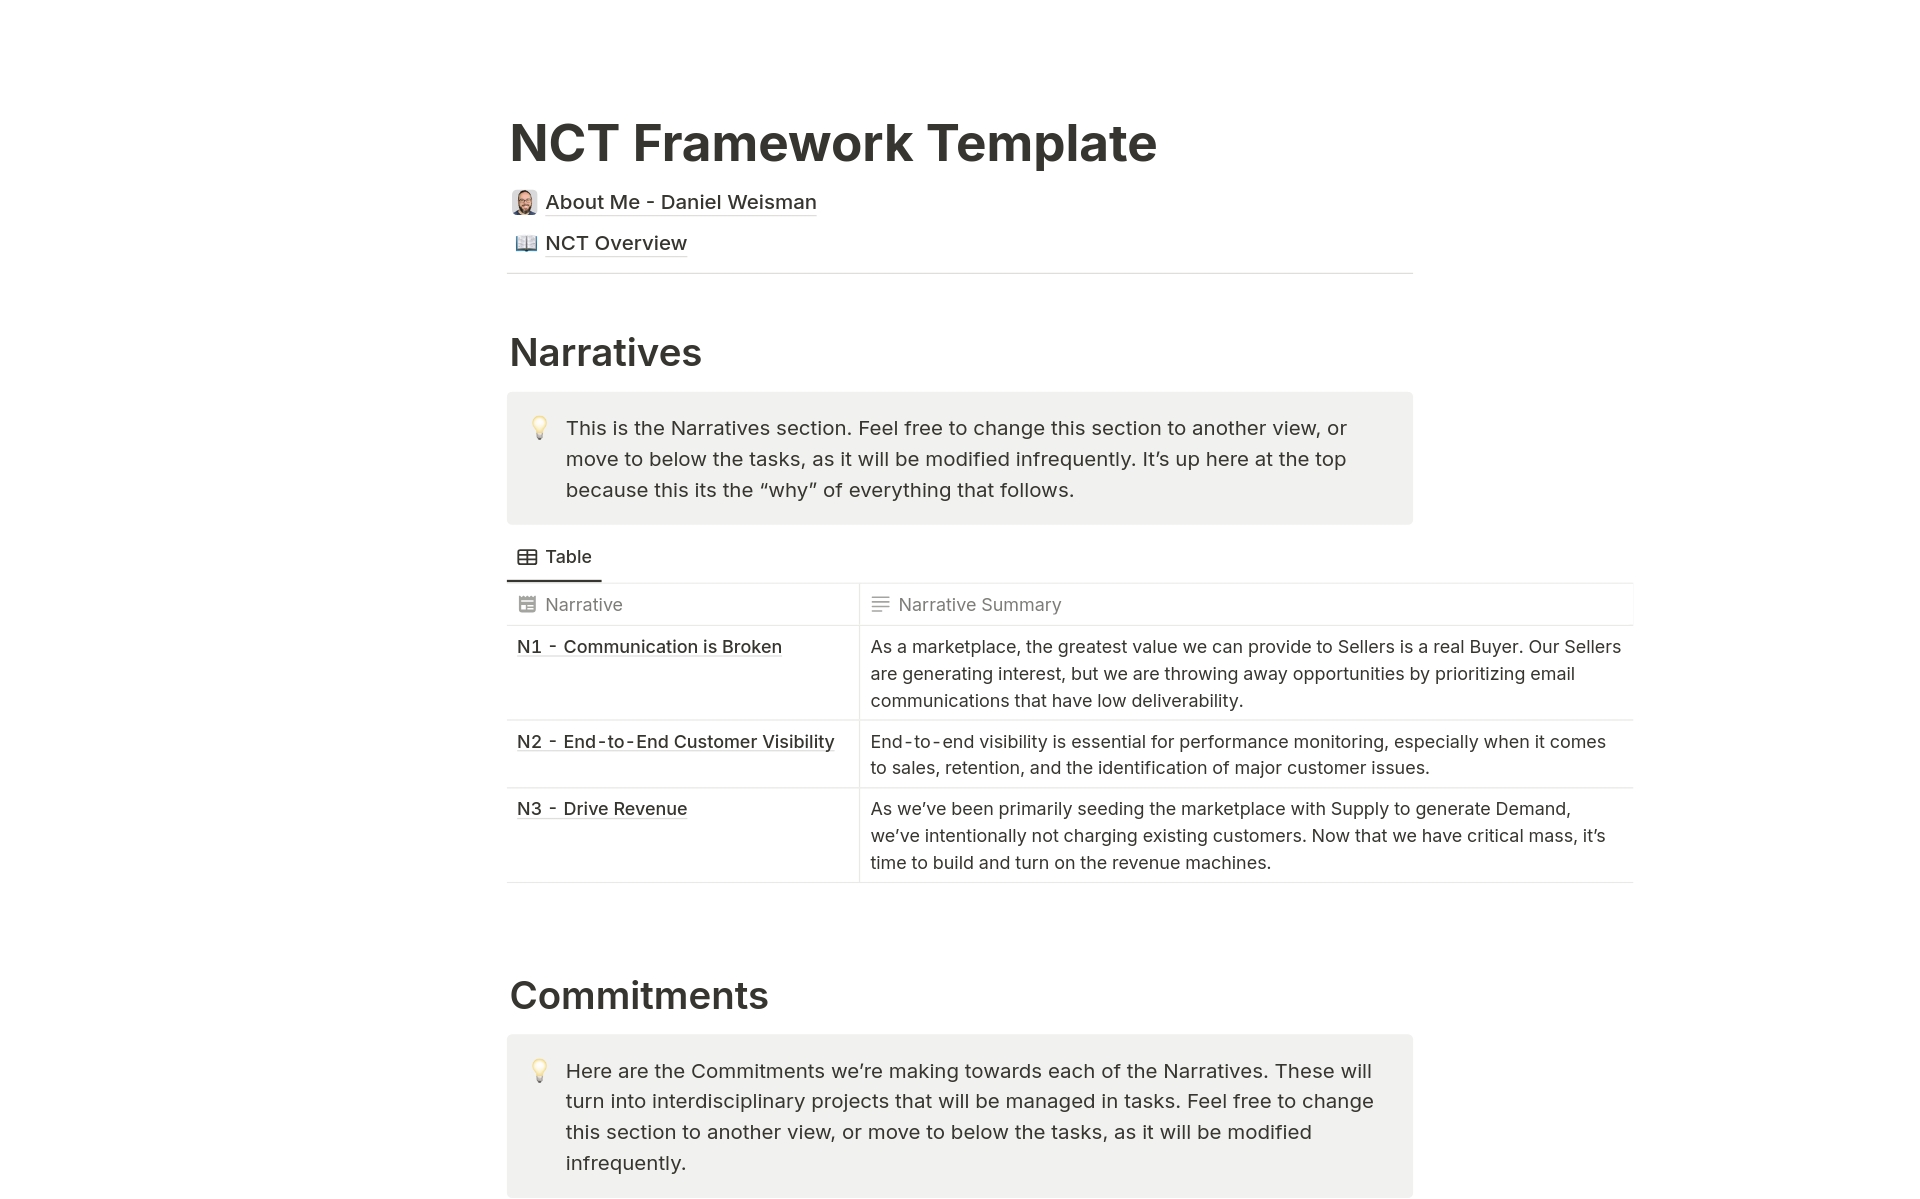 Vista previa de una plantilla para NCT Framework